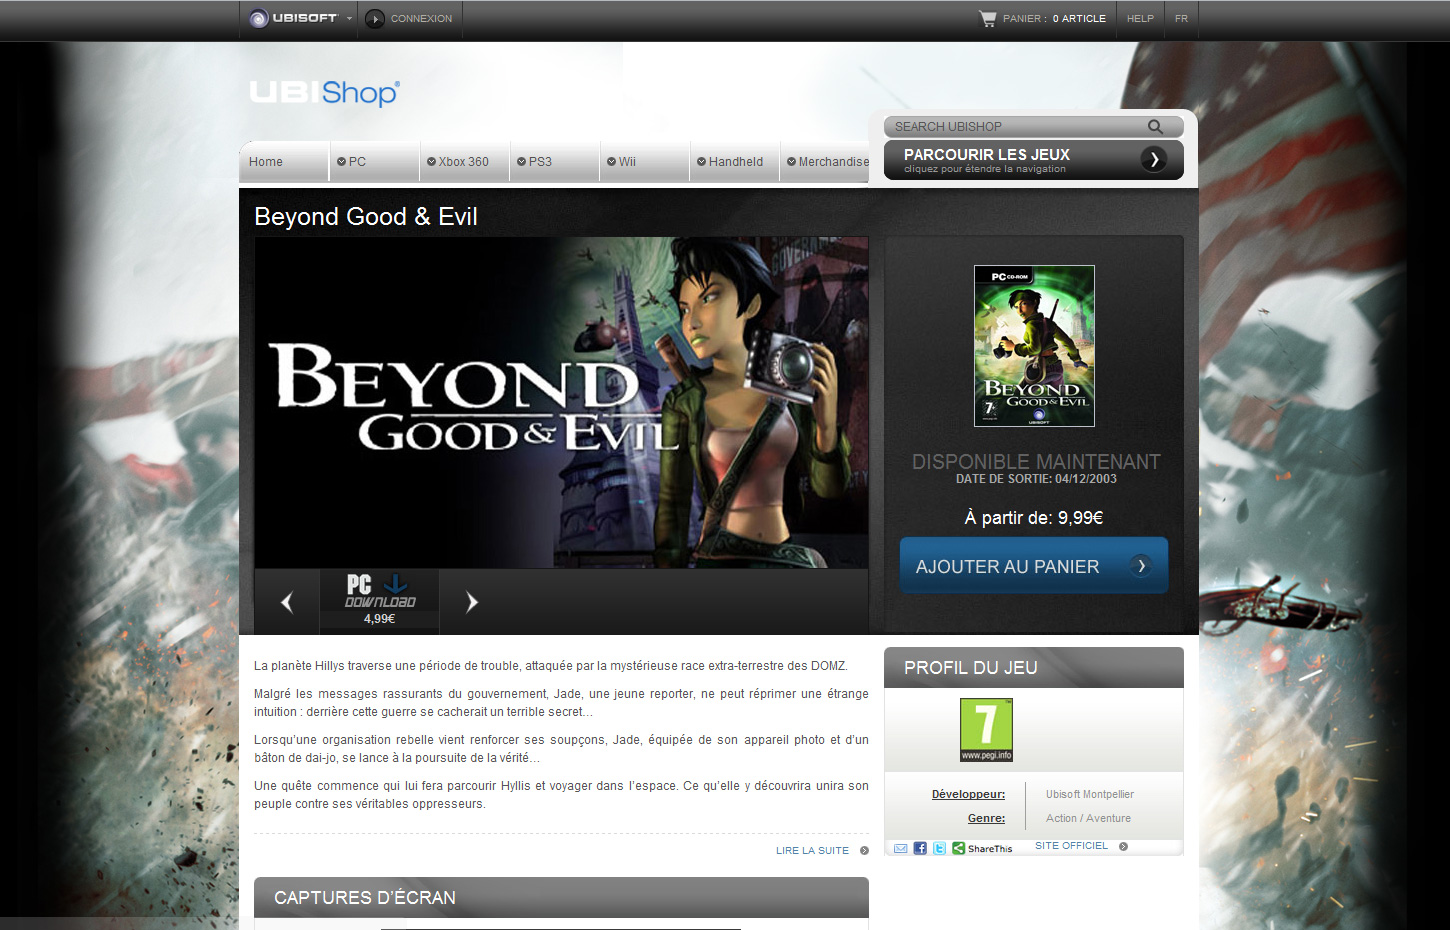 Beyond Good & Evil gratuit sur l'Ubishop